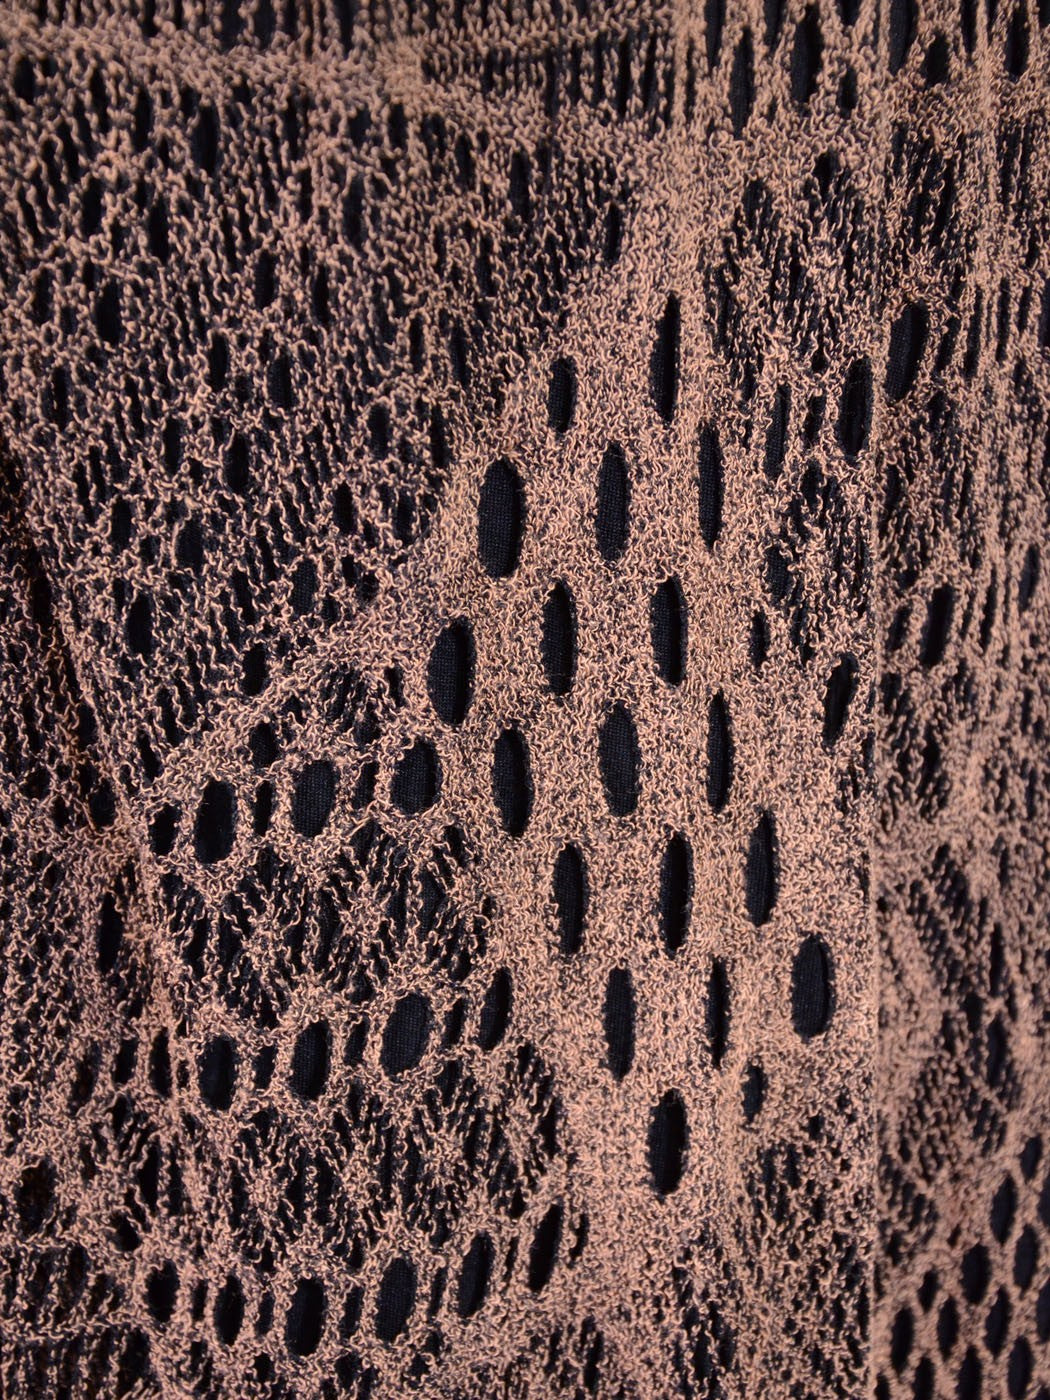 Oxford Circus Bohemian Chunky Abstract Mesh Pattern Long Knit Maxi Skirt - ALILANG.COM